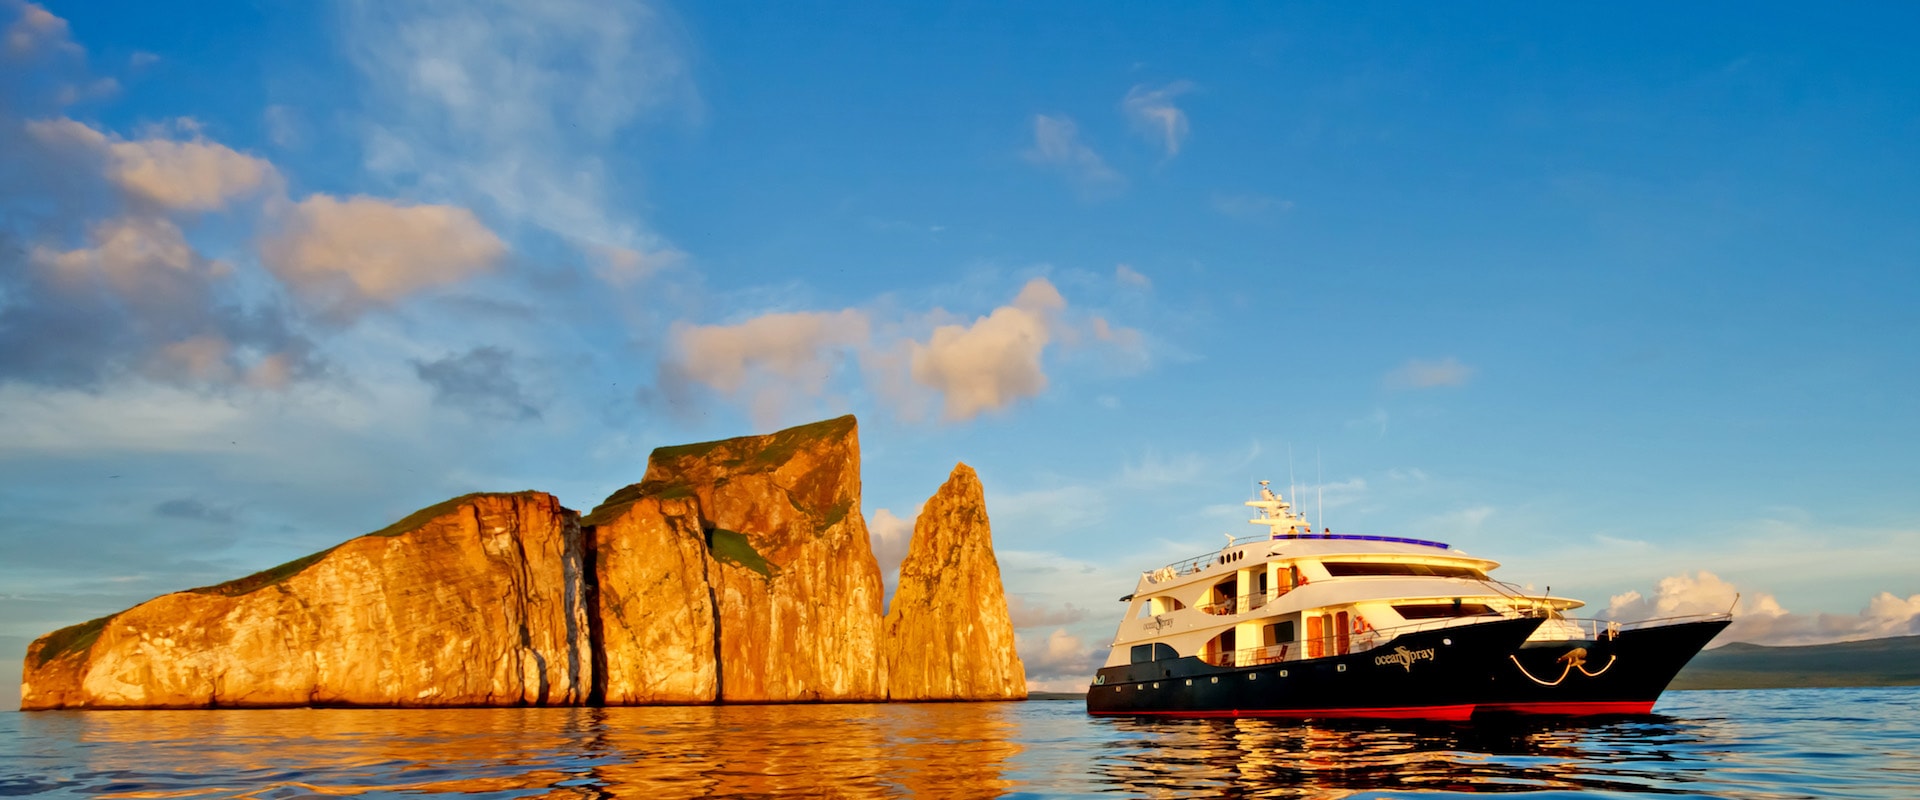 53 Kreuzfahrten auf Kleinen Schiffen - Galapagosinseln - LiveAboard.com